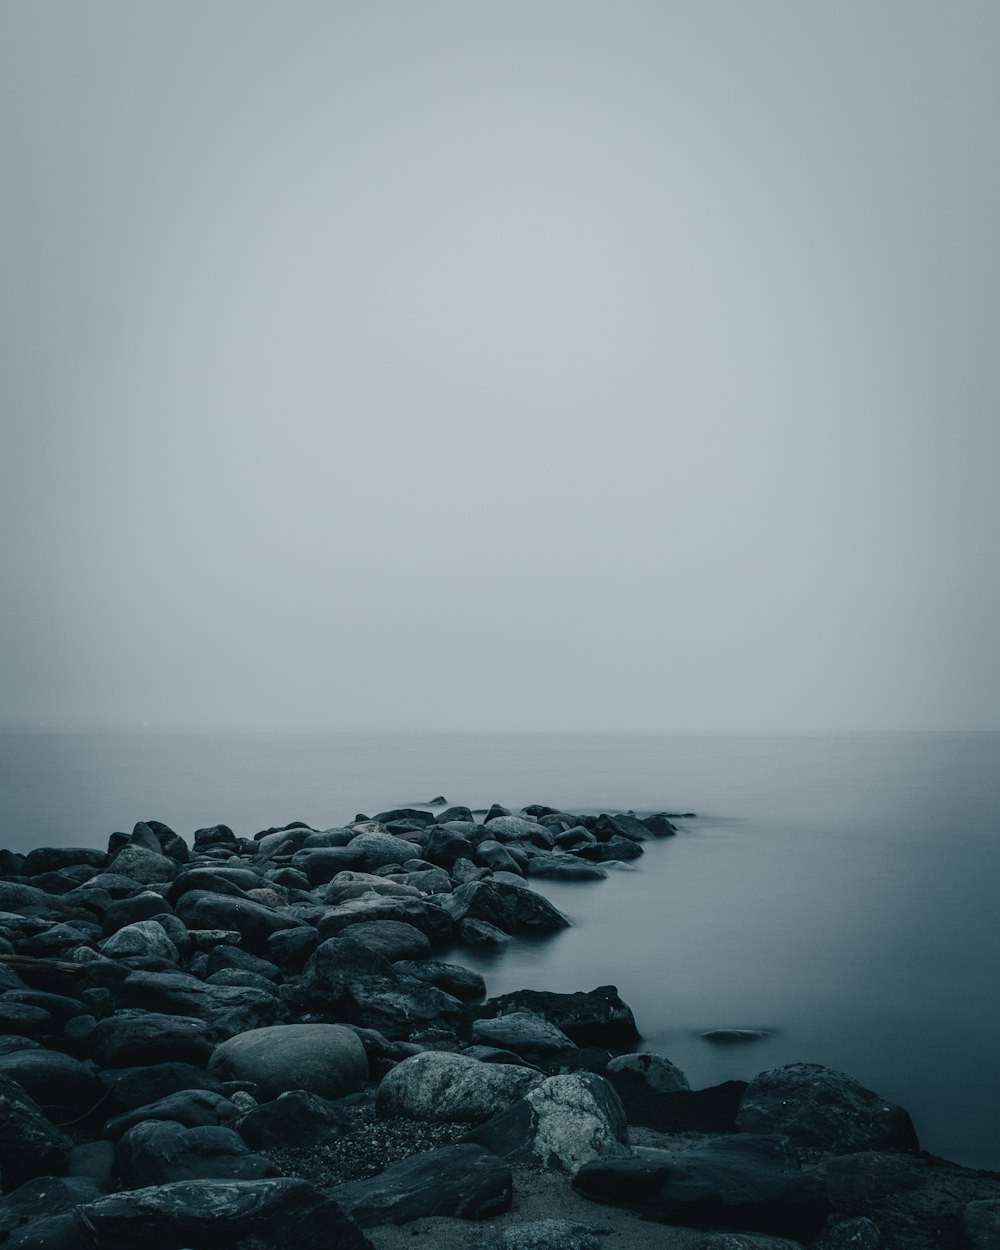 rochas cinzentas no corpo de água